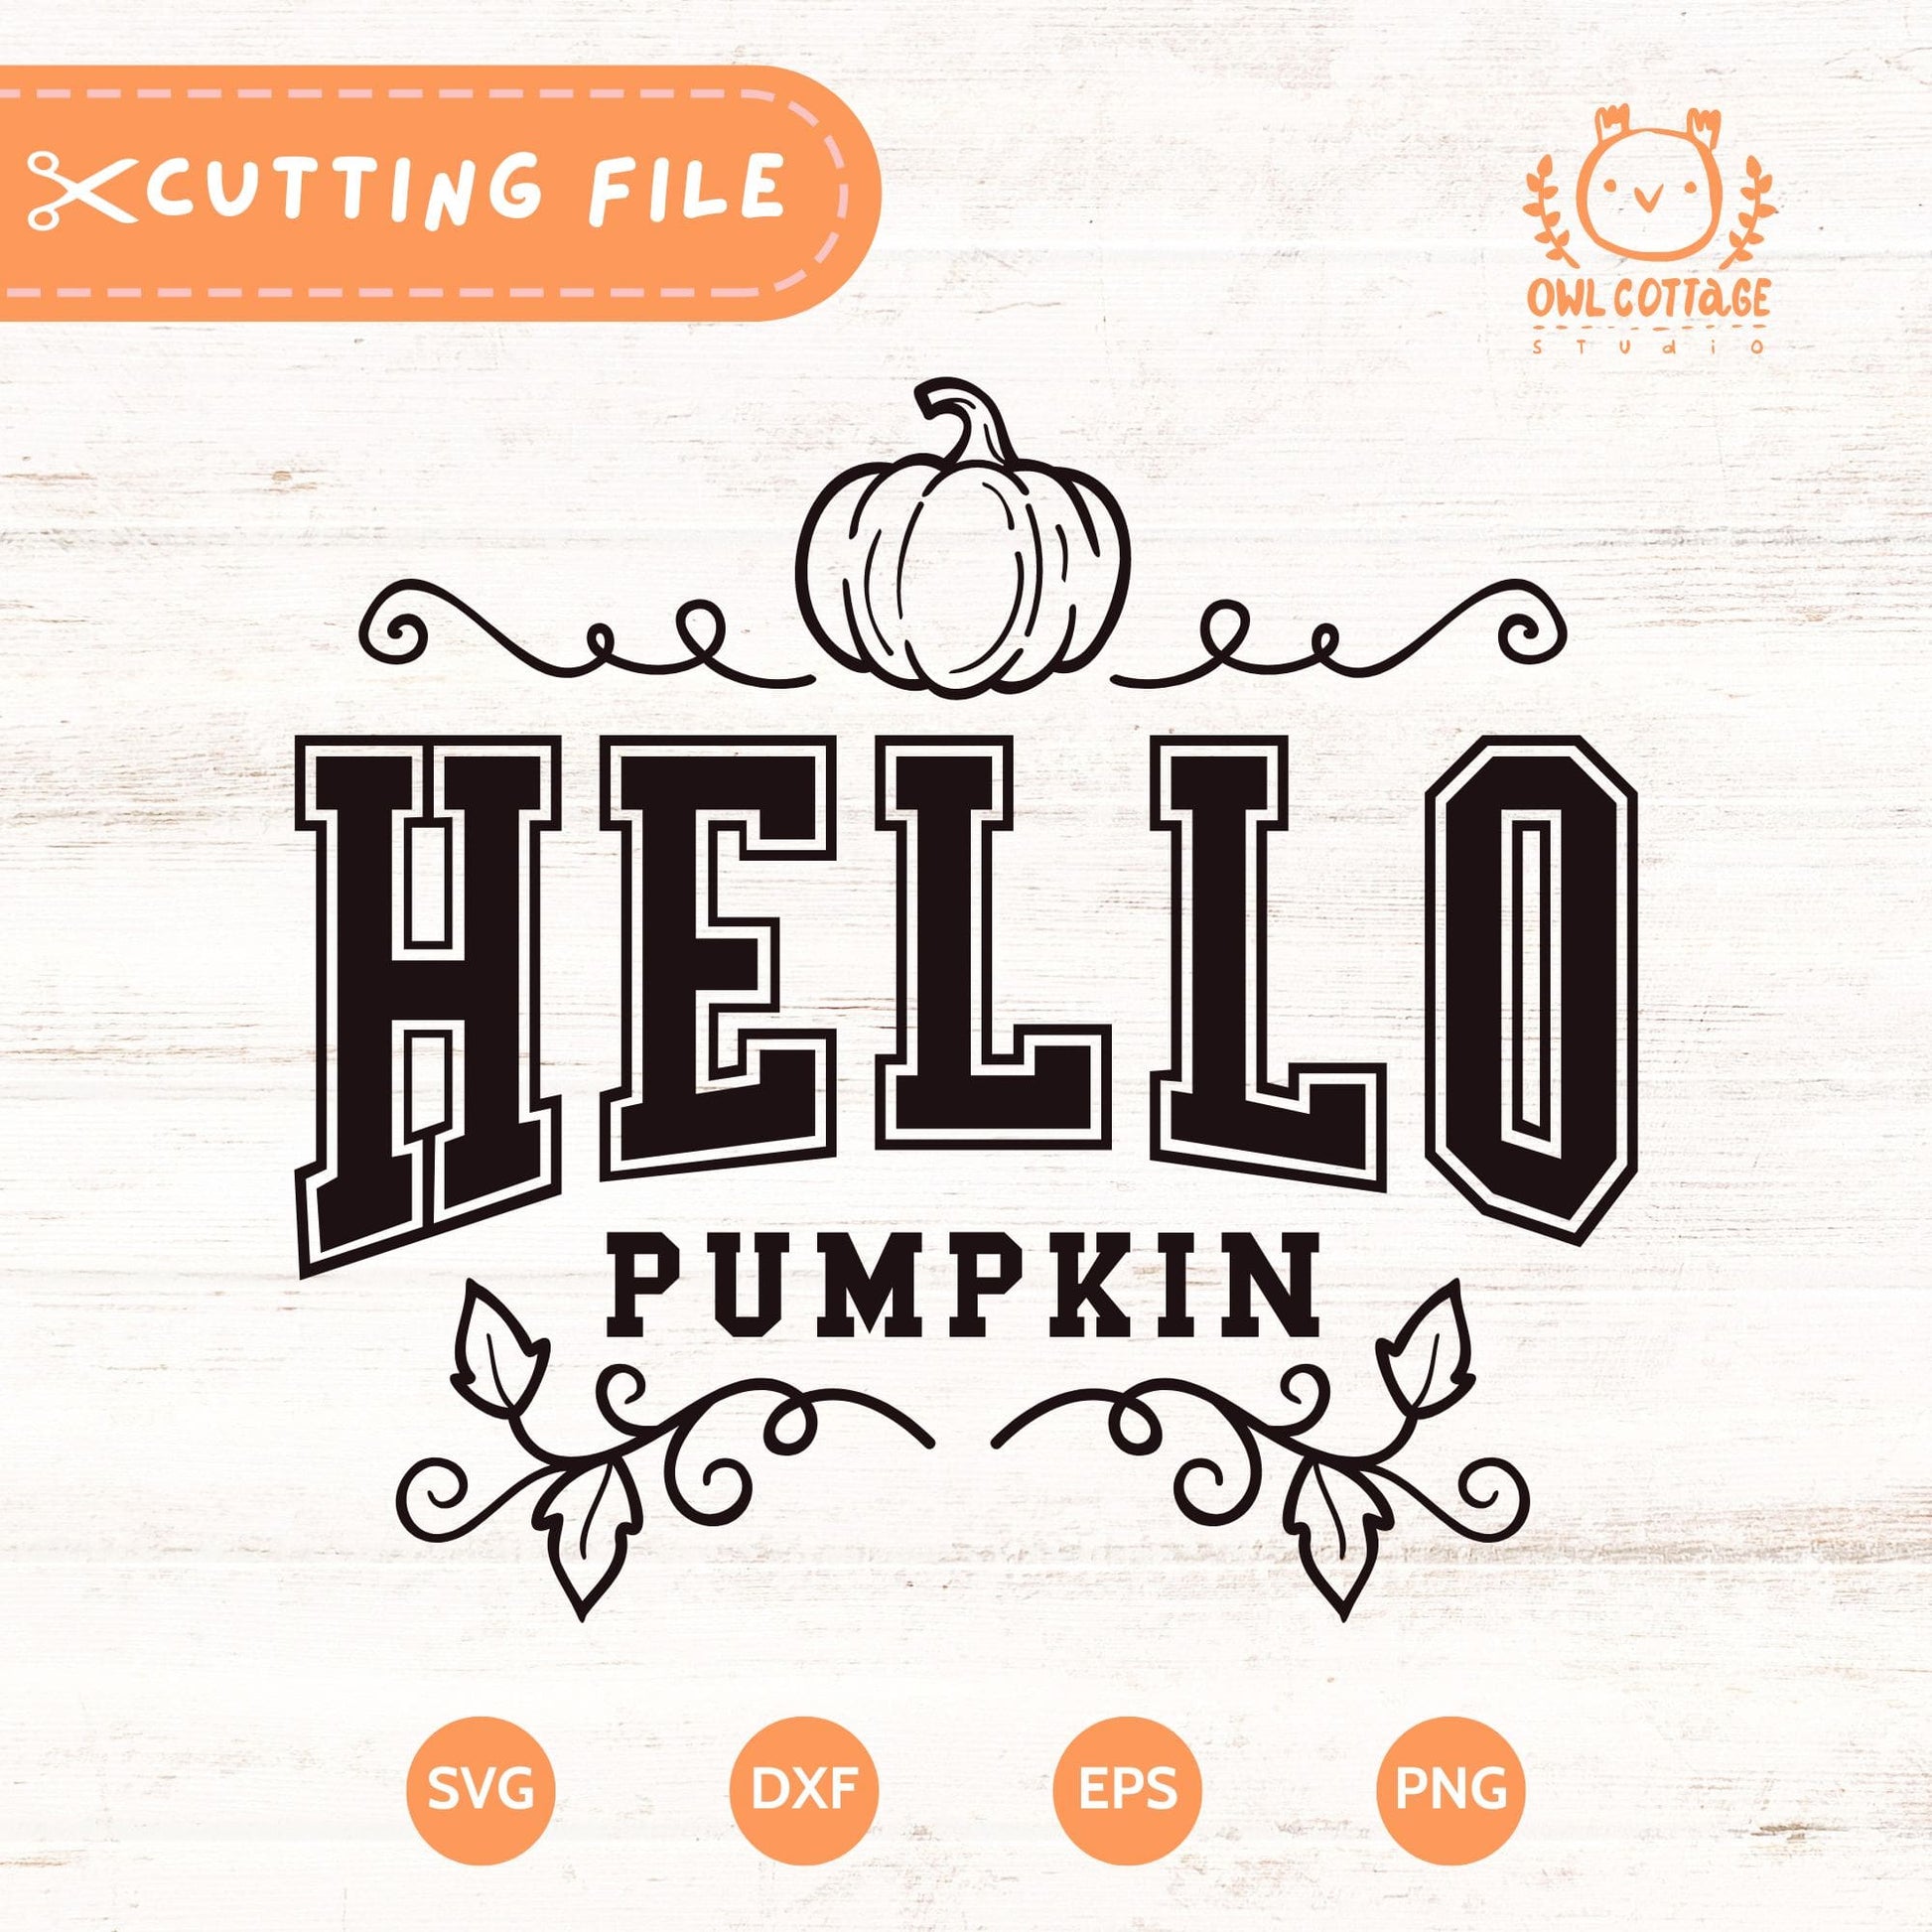 Hello Pumpkin SVG Cut File For Cricut And Silhouette